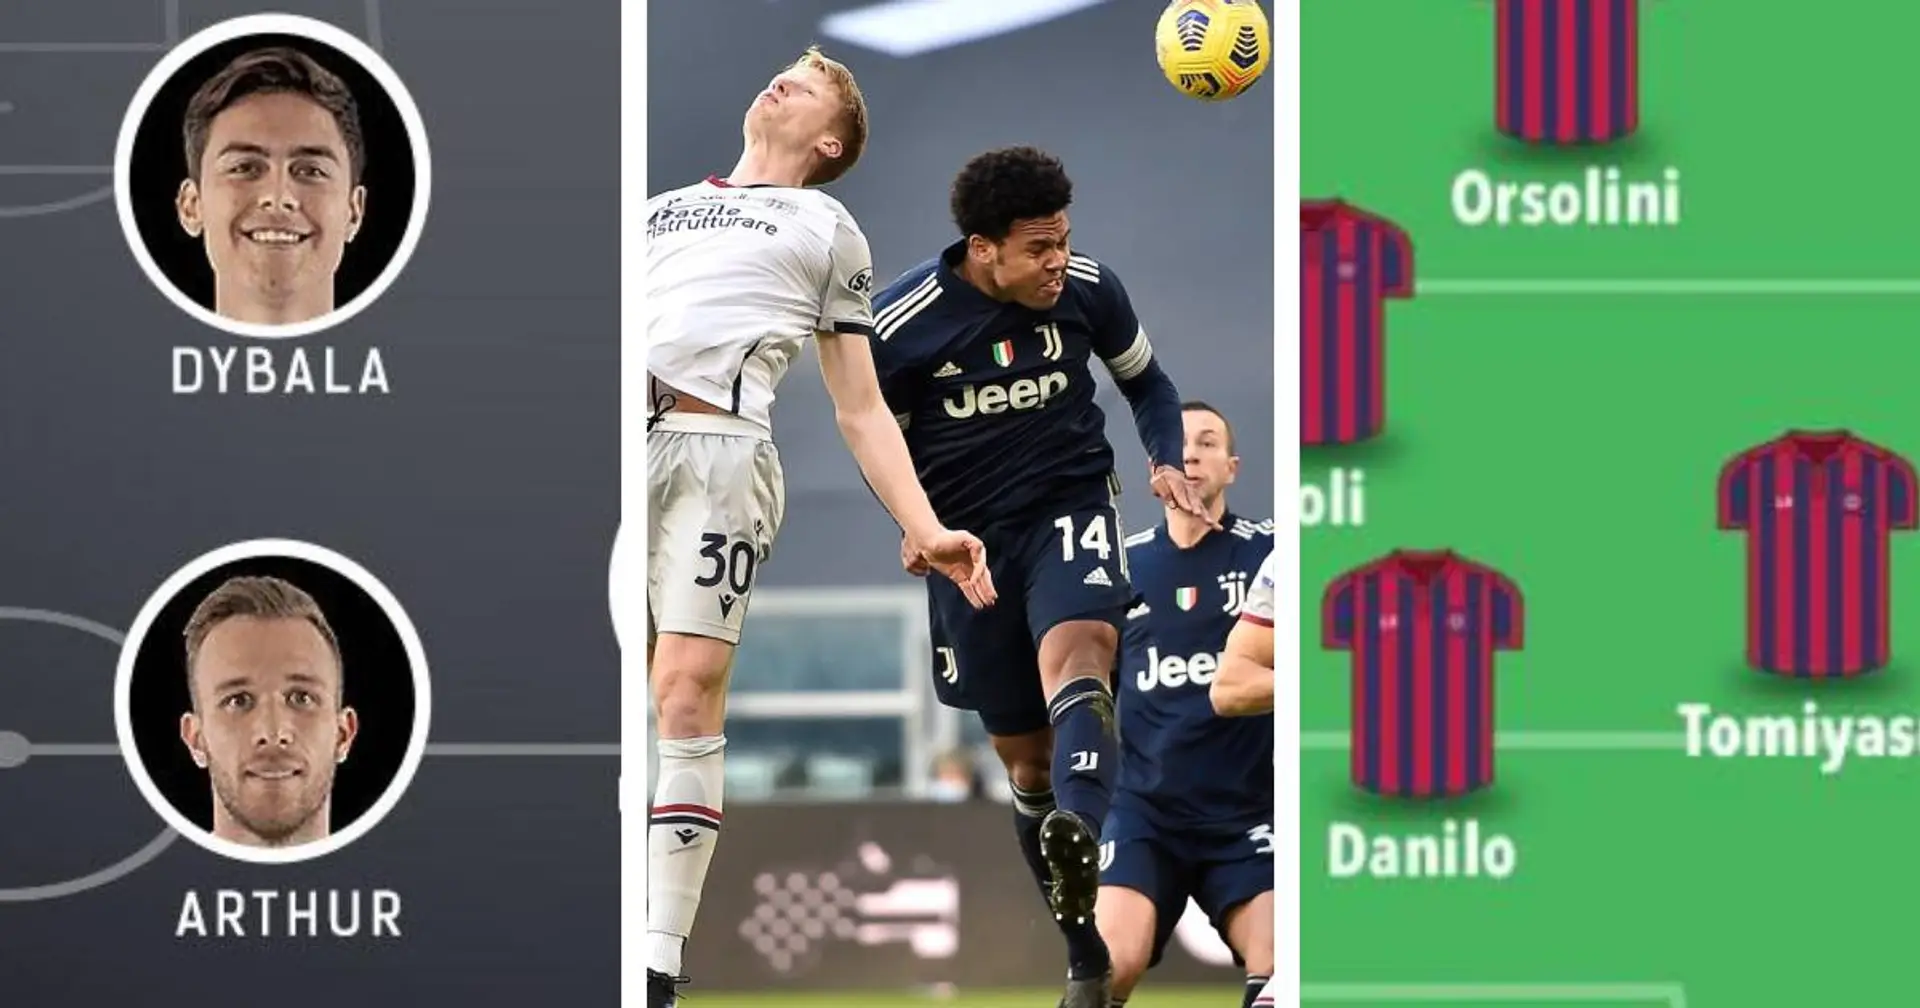 Il possibile XI della Juve vs l'XI del Bologna: ecco quale giocatore può fare la differenza